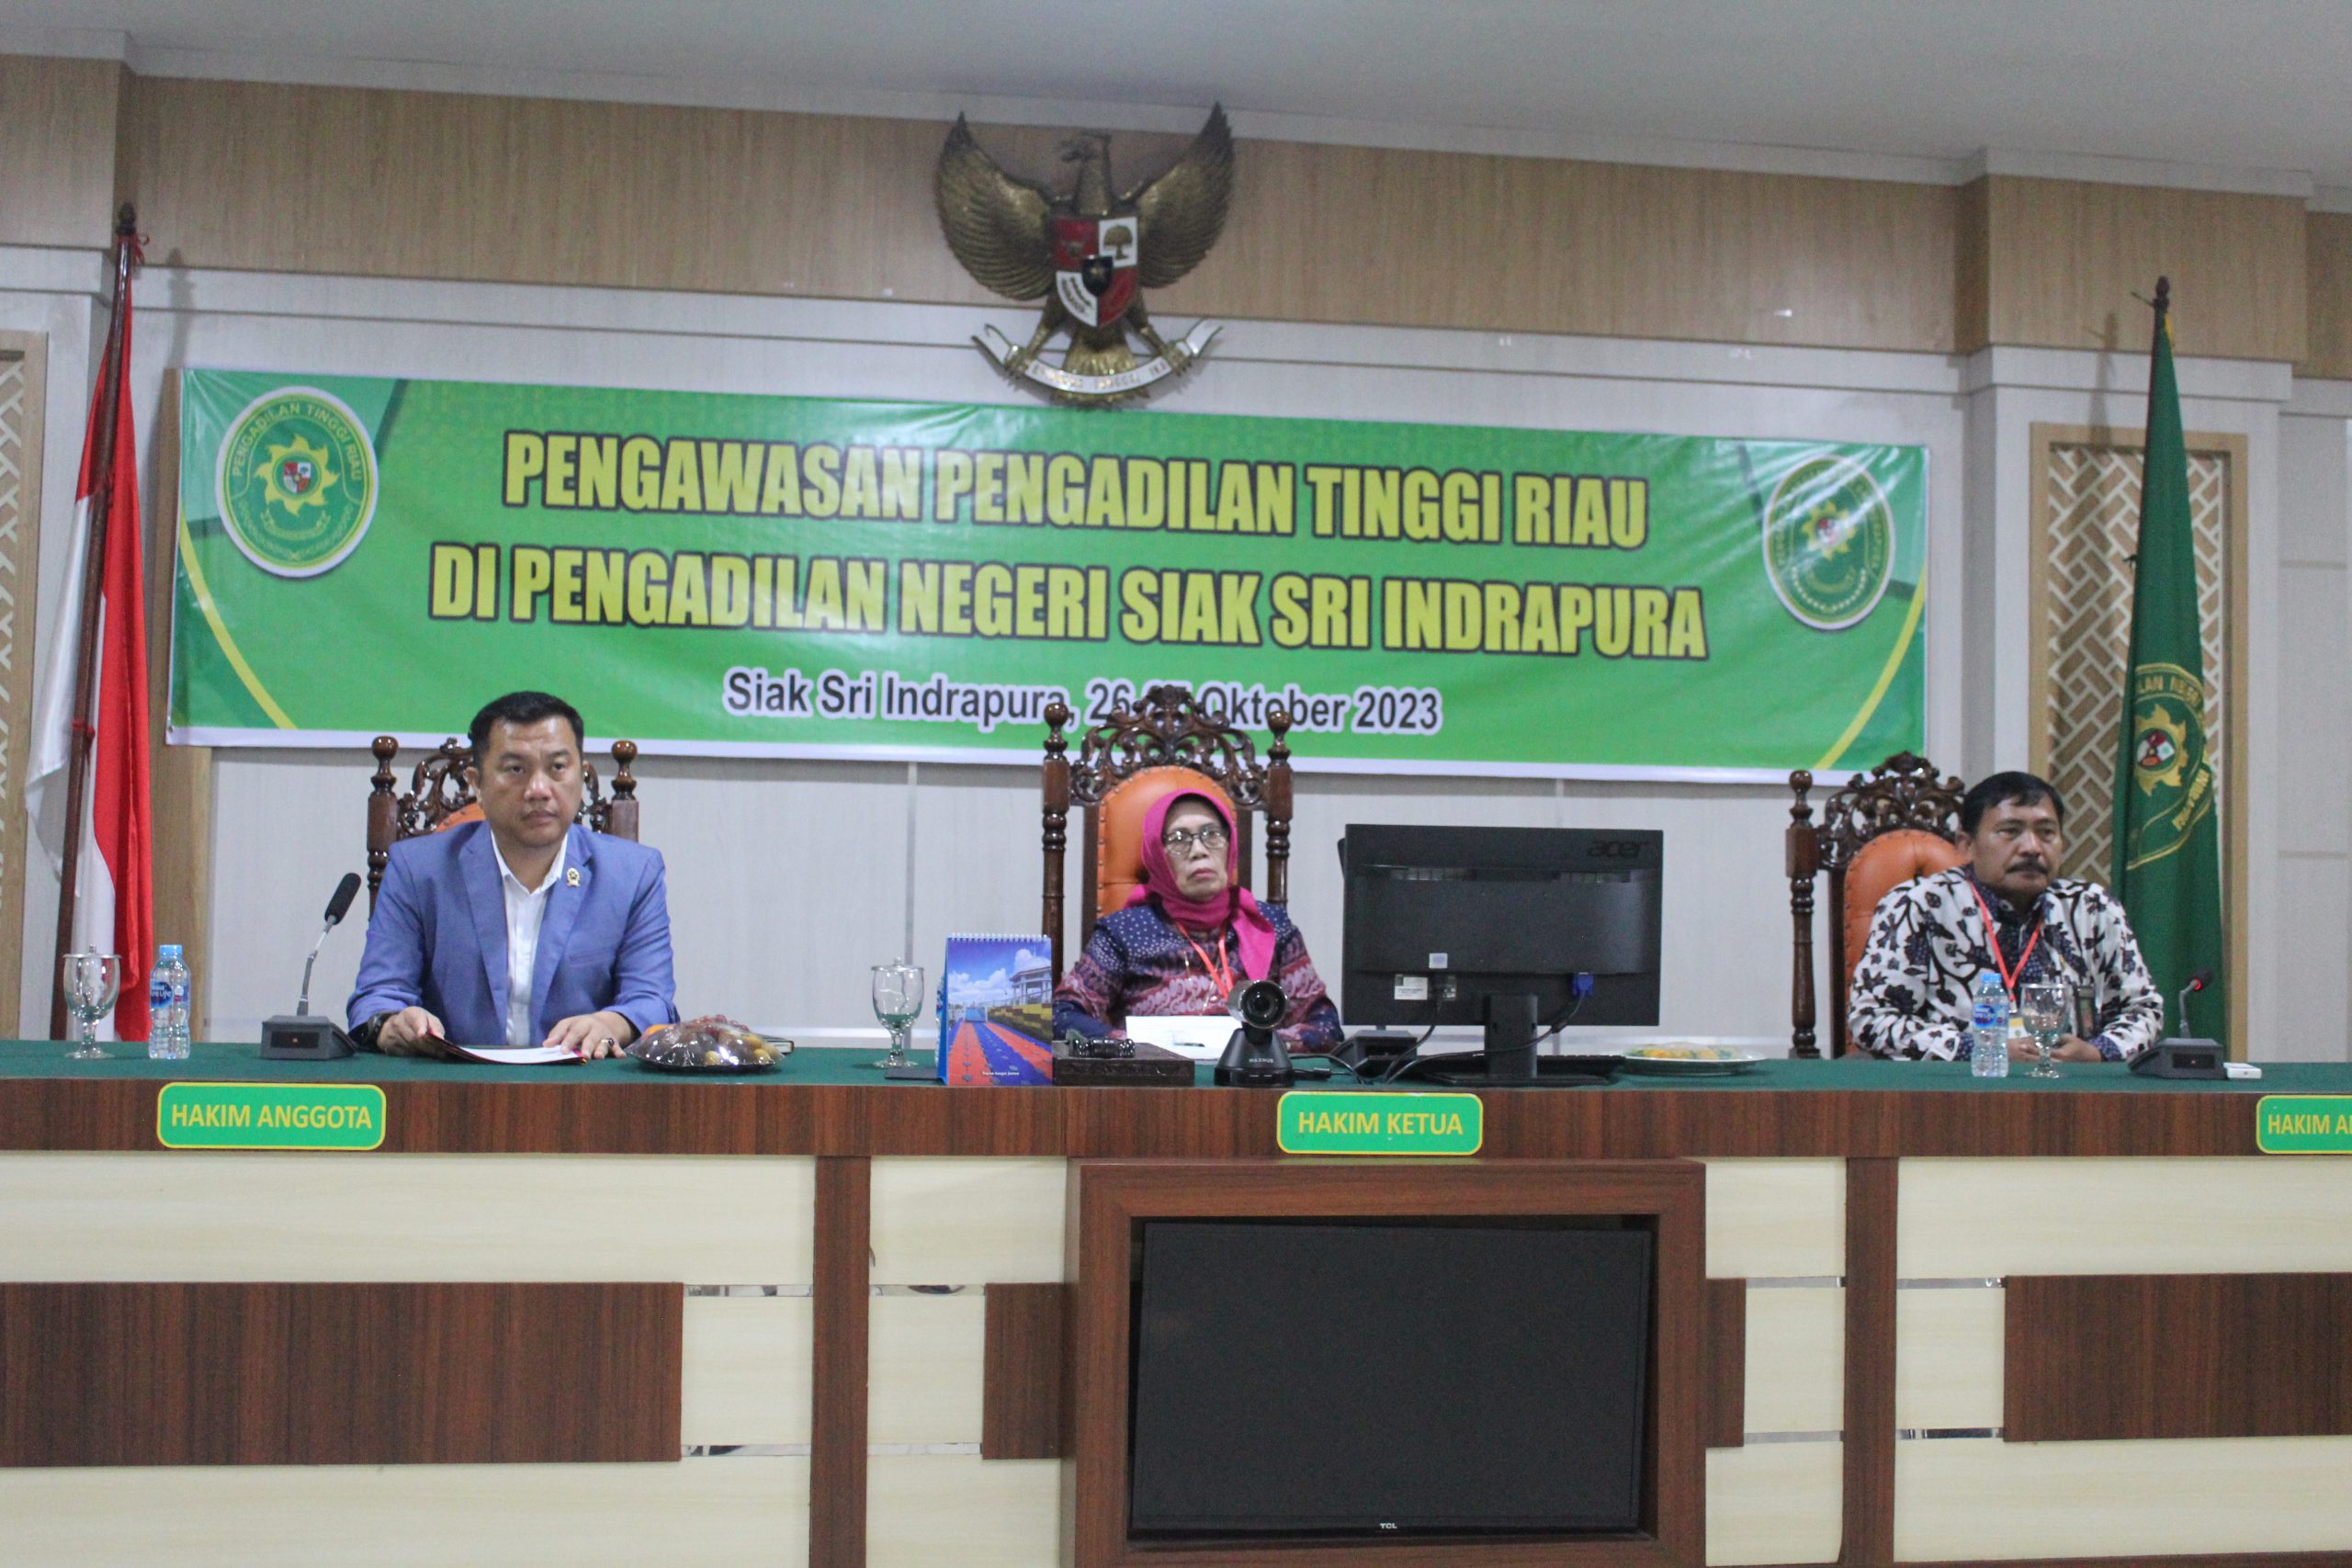 Opening Meeting Pengawasan dan Pembinaan oleh Pengadilan Tinggi Riau